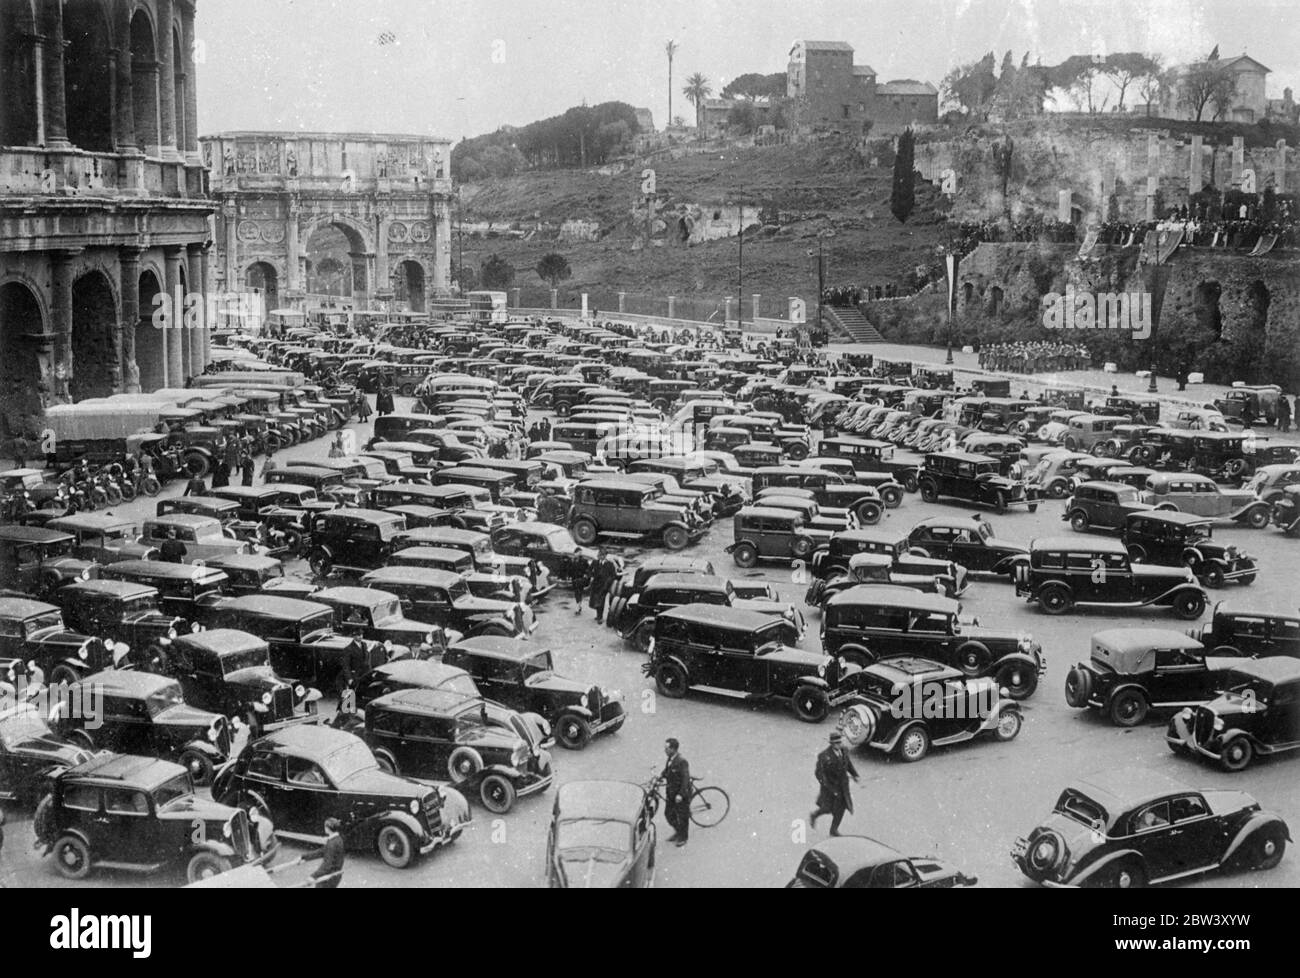 Rom ' s moderne Wagen Masse am Kolosseum für jährliche Segenszeremonie . Hunderte von Autofahrern versammelten sich mit ihren Autos einst die, wo die römischen Streitwagen donnerten, als sie am Kolosseum in Rom zum jährlichen "Segen der Autos" zusammenkamen. Foto zeigt, die Hunderte von Autos für die Zeremonie durch das Kolosseum in Rom massiert. 11 März 1937 Stockfoto